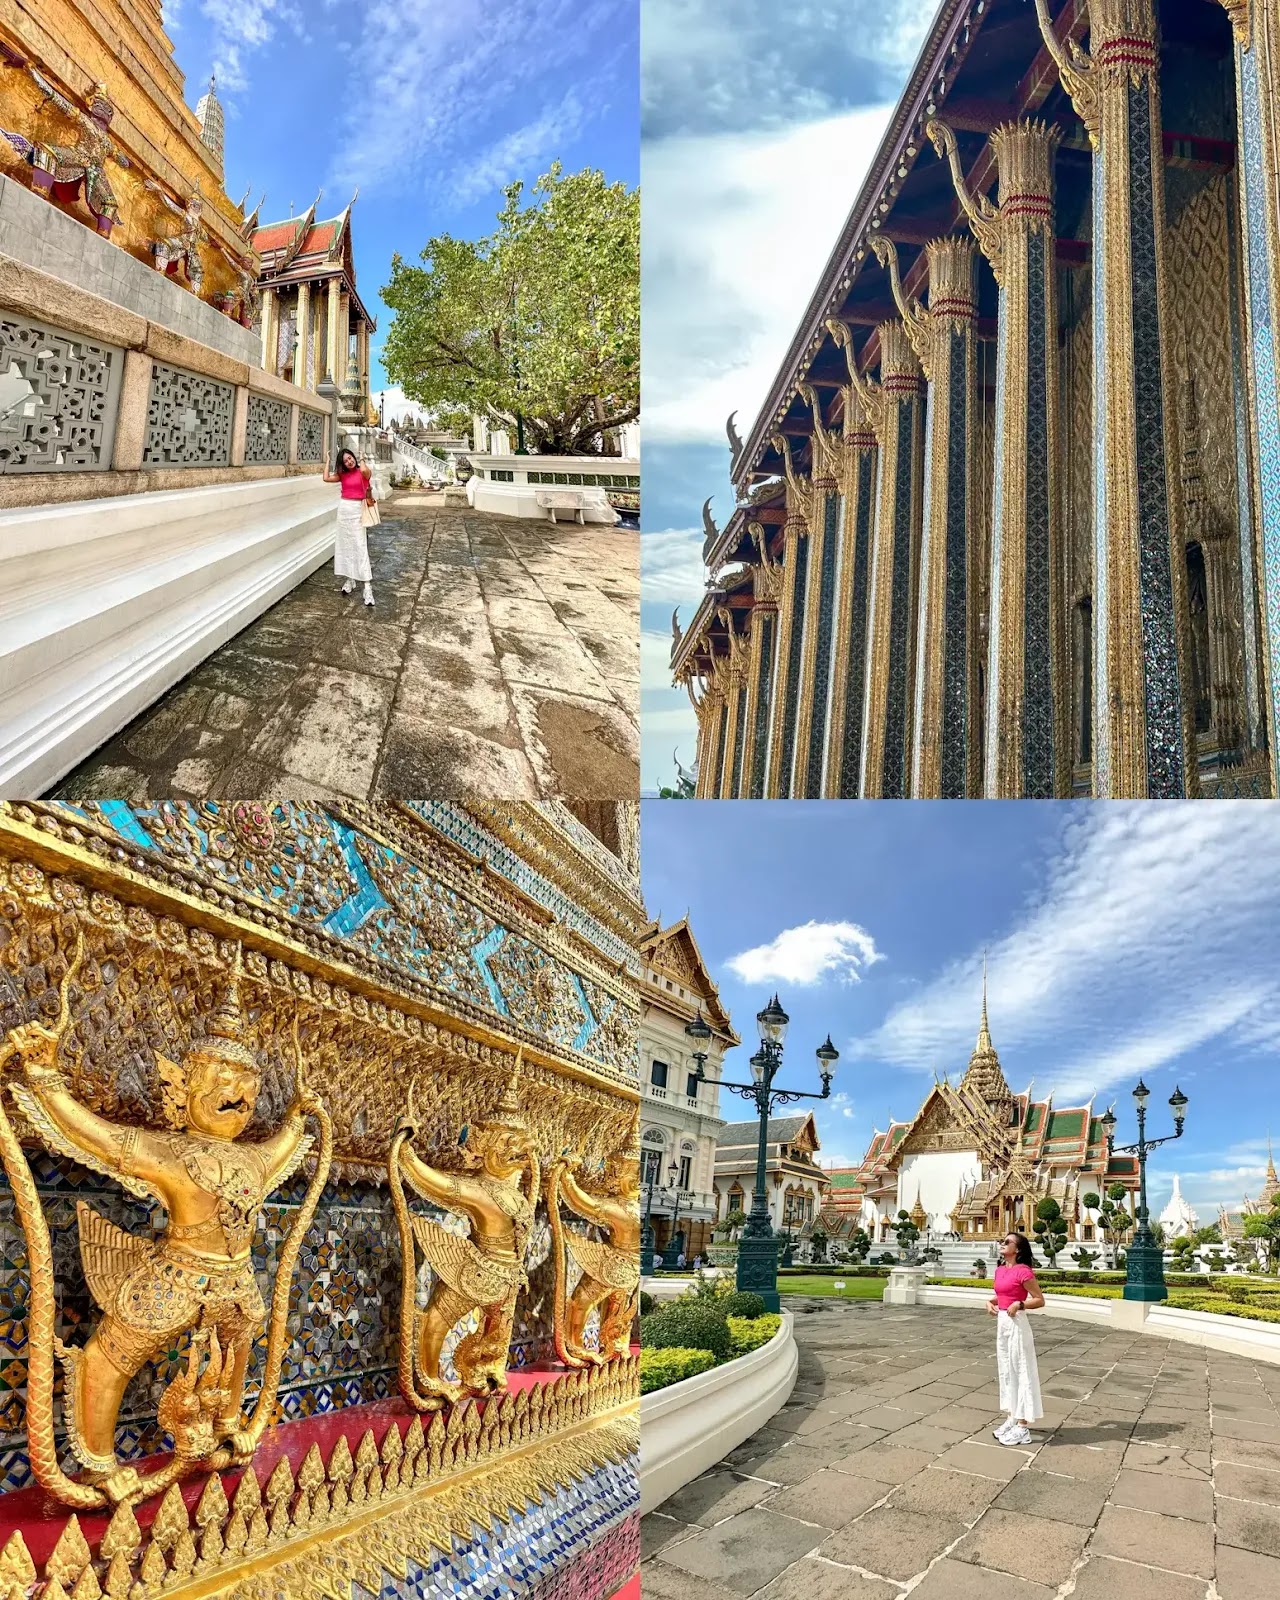 Bangkok Day 2: Temple Run at The Grand Palace, Wat Pho, and Wat Arun